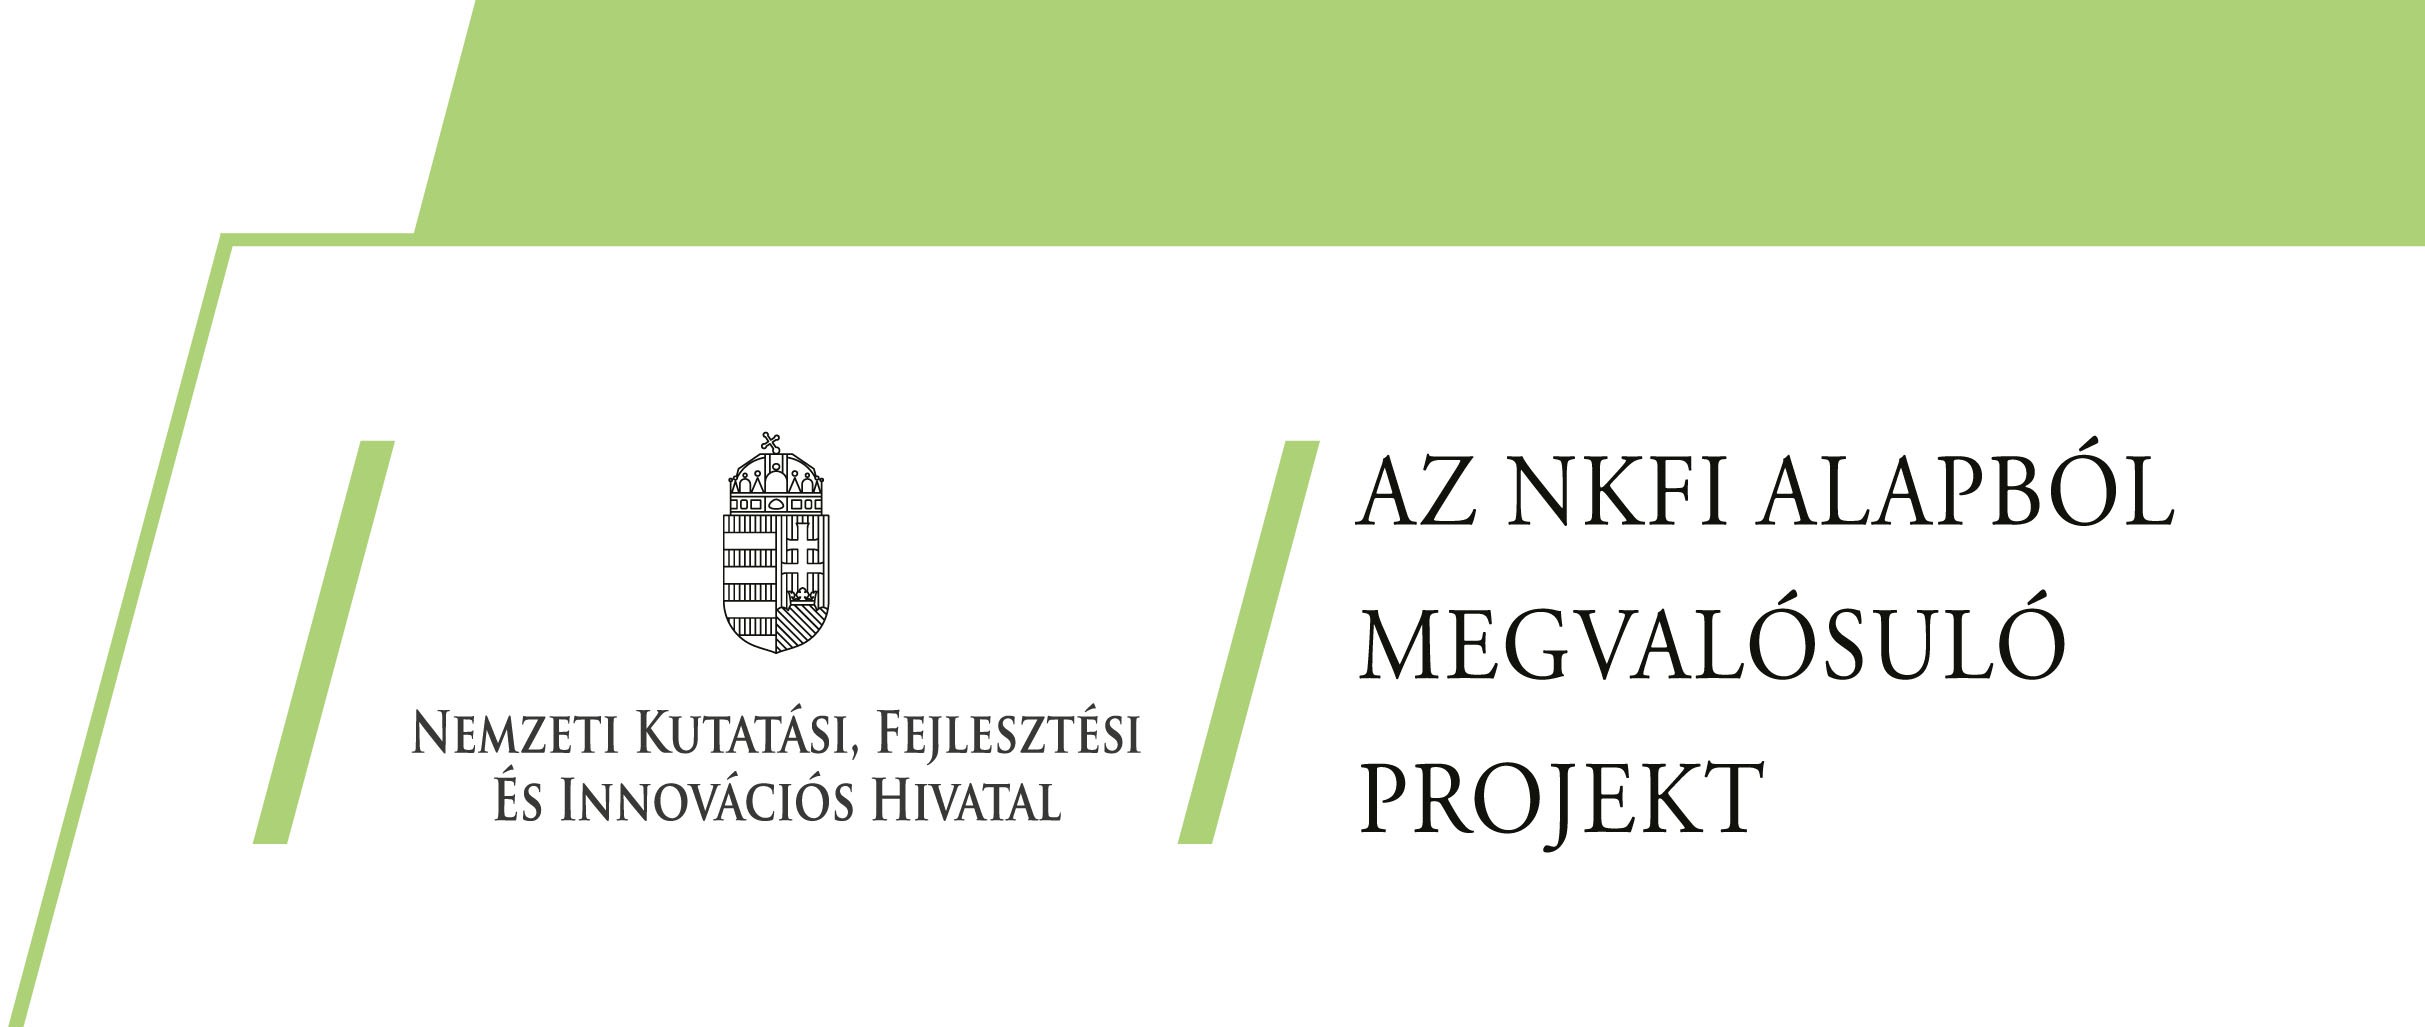 Széchenyi 2020 fekvő logó Magyar Kormány logó Európai Strukturális és Beruházási Alapok „Befektetés a jövőbe” szlogen